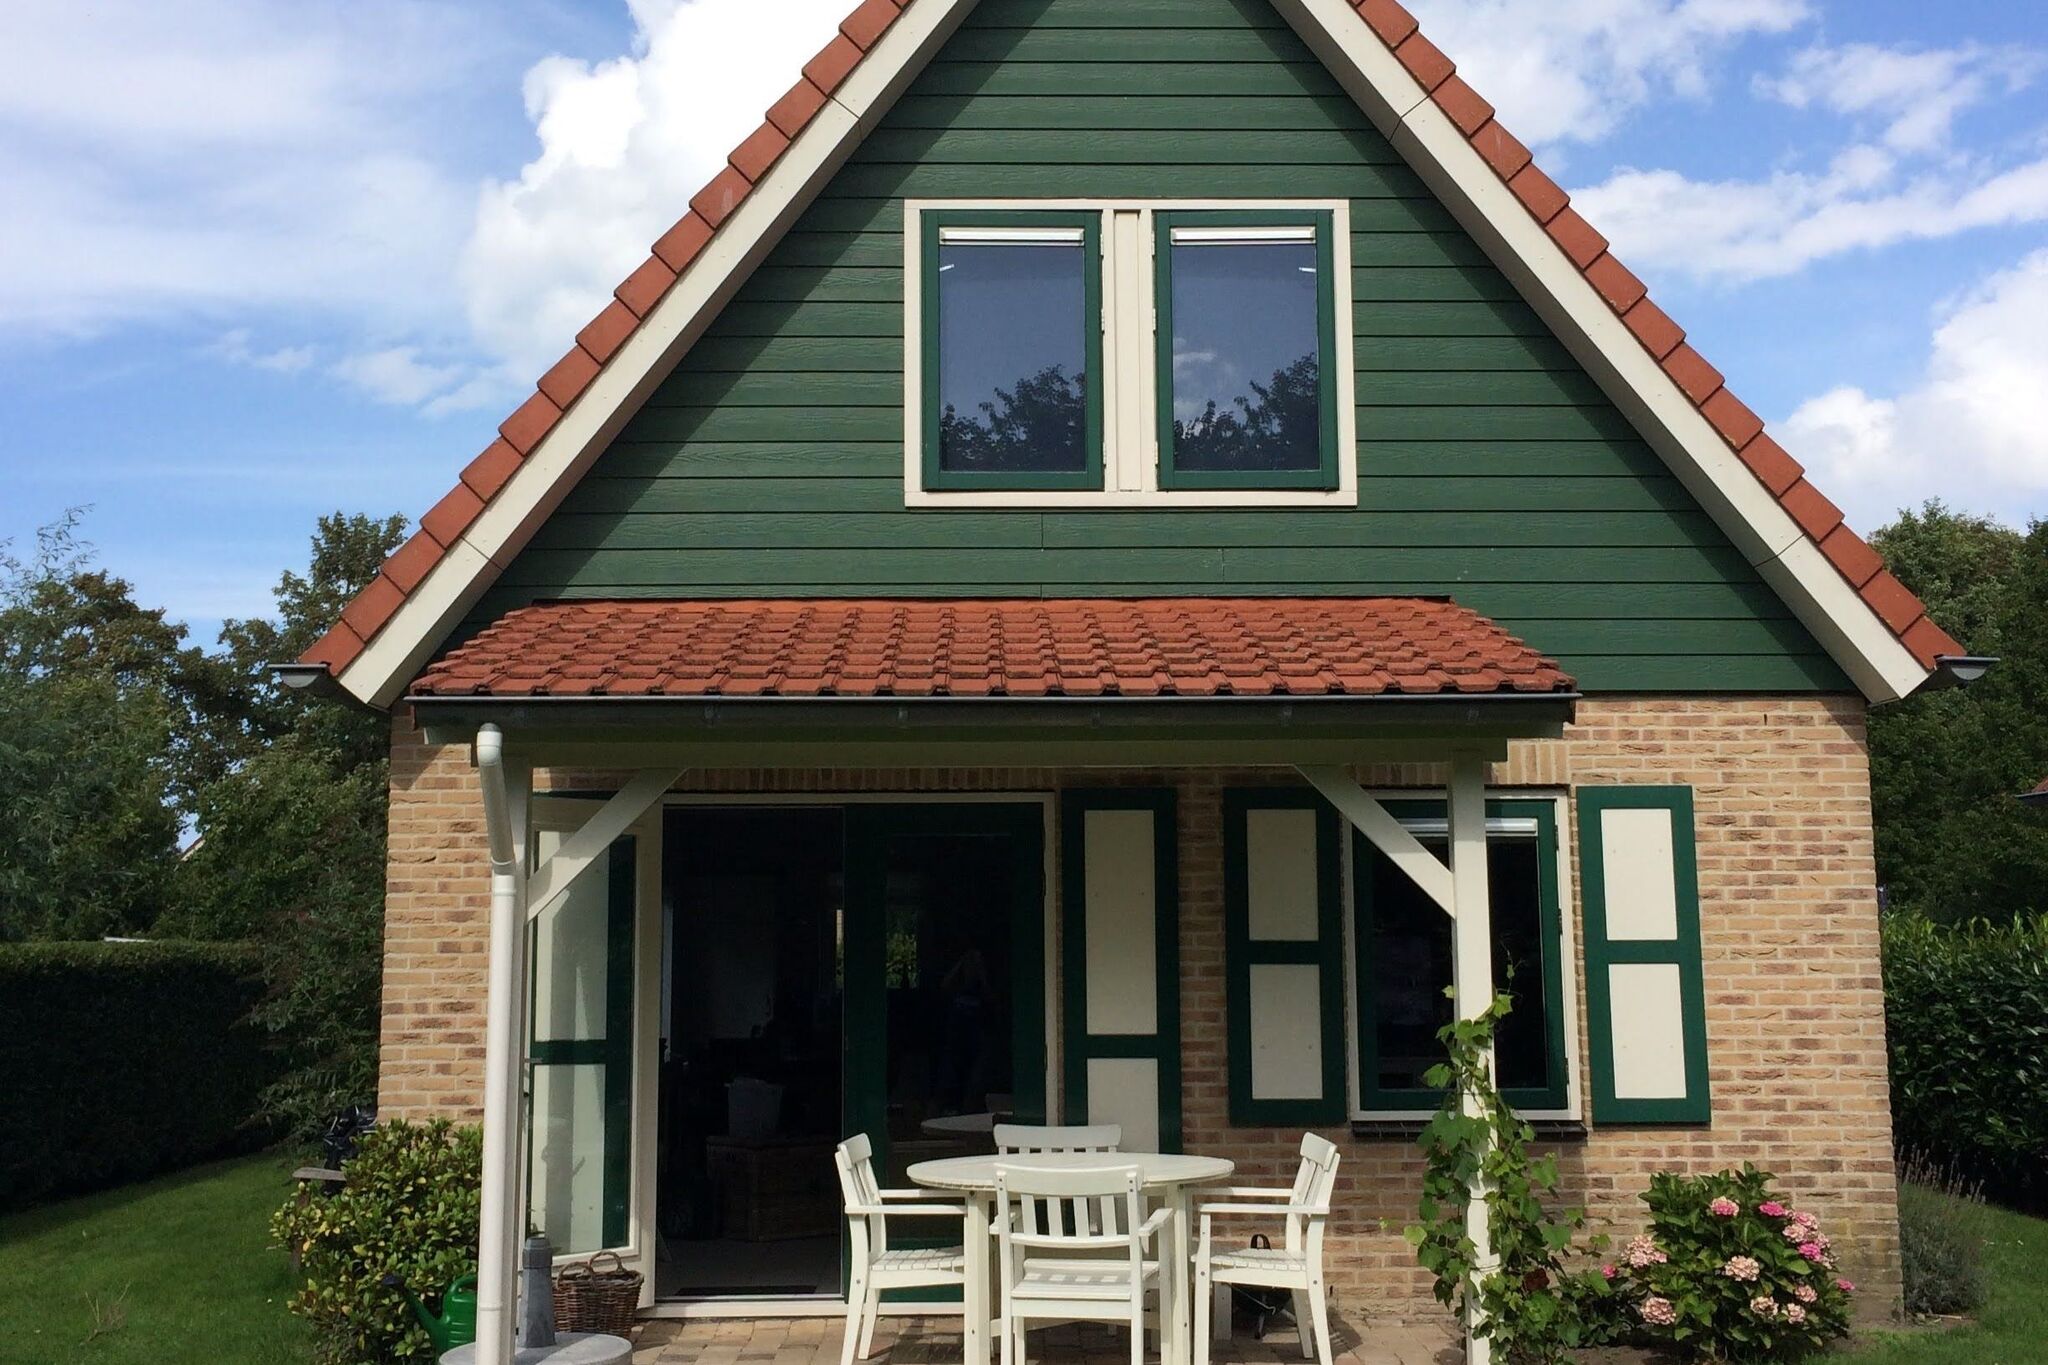 Belle maison de vacances bien entretenue, située à Zonnemaire, à une courte distance de la mer !